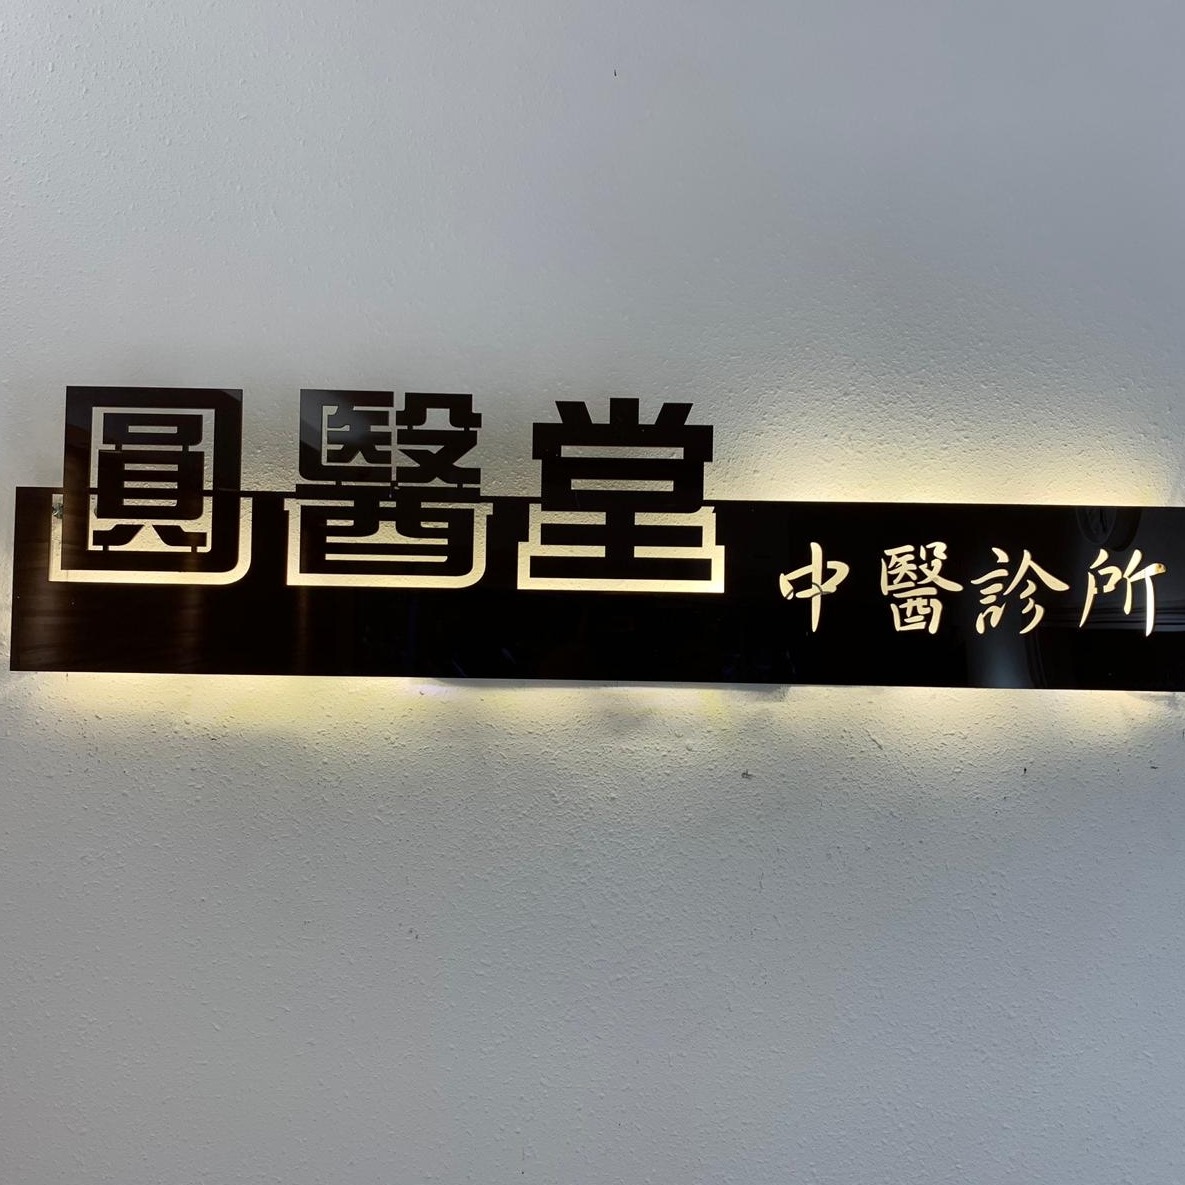 中醫診所: 圓醫堂中醫診所